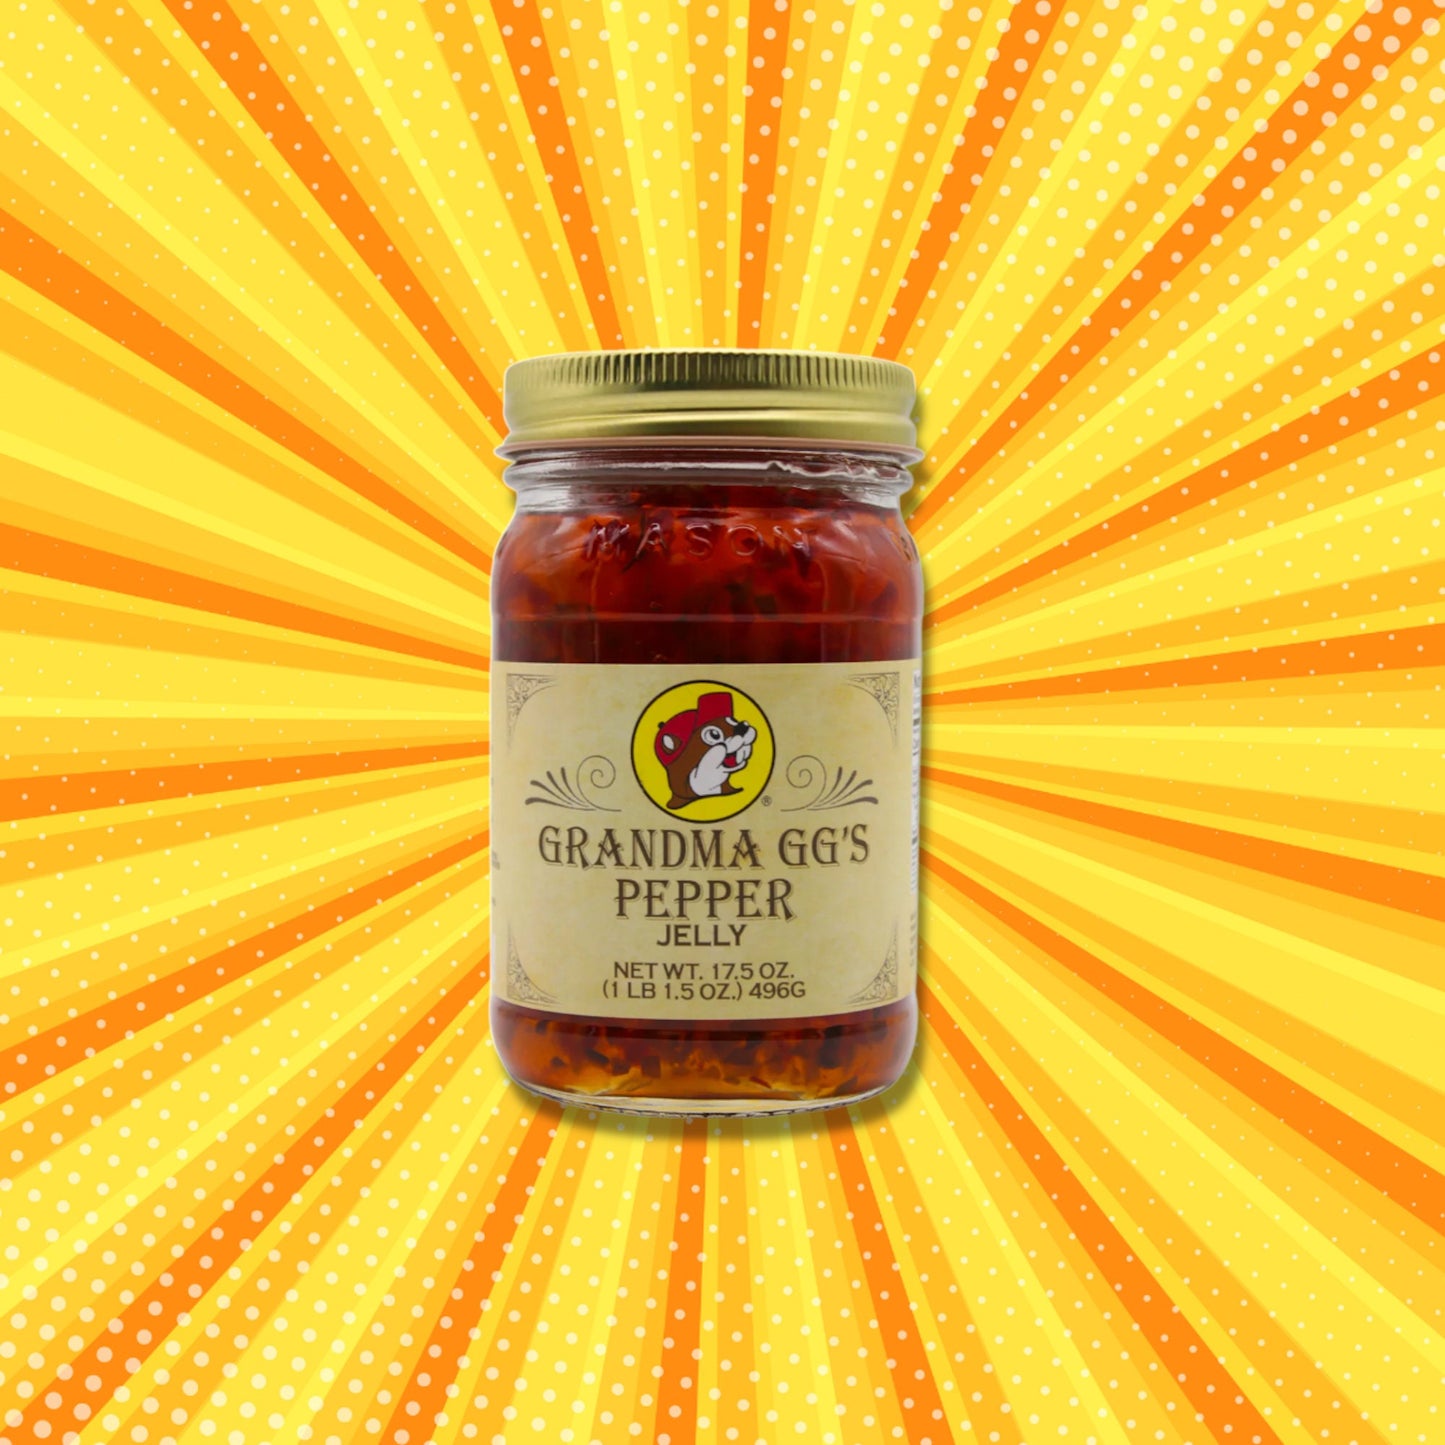 Buc-ee's Grandma GG's Pepper Jelly